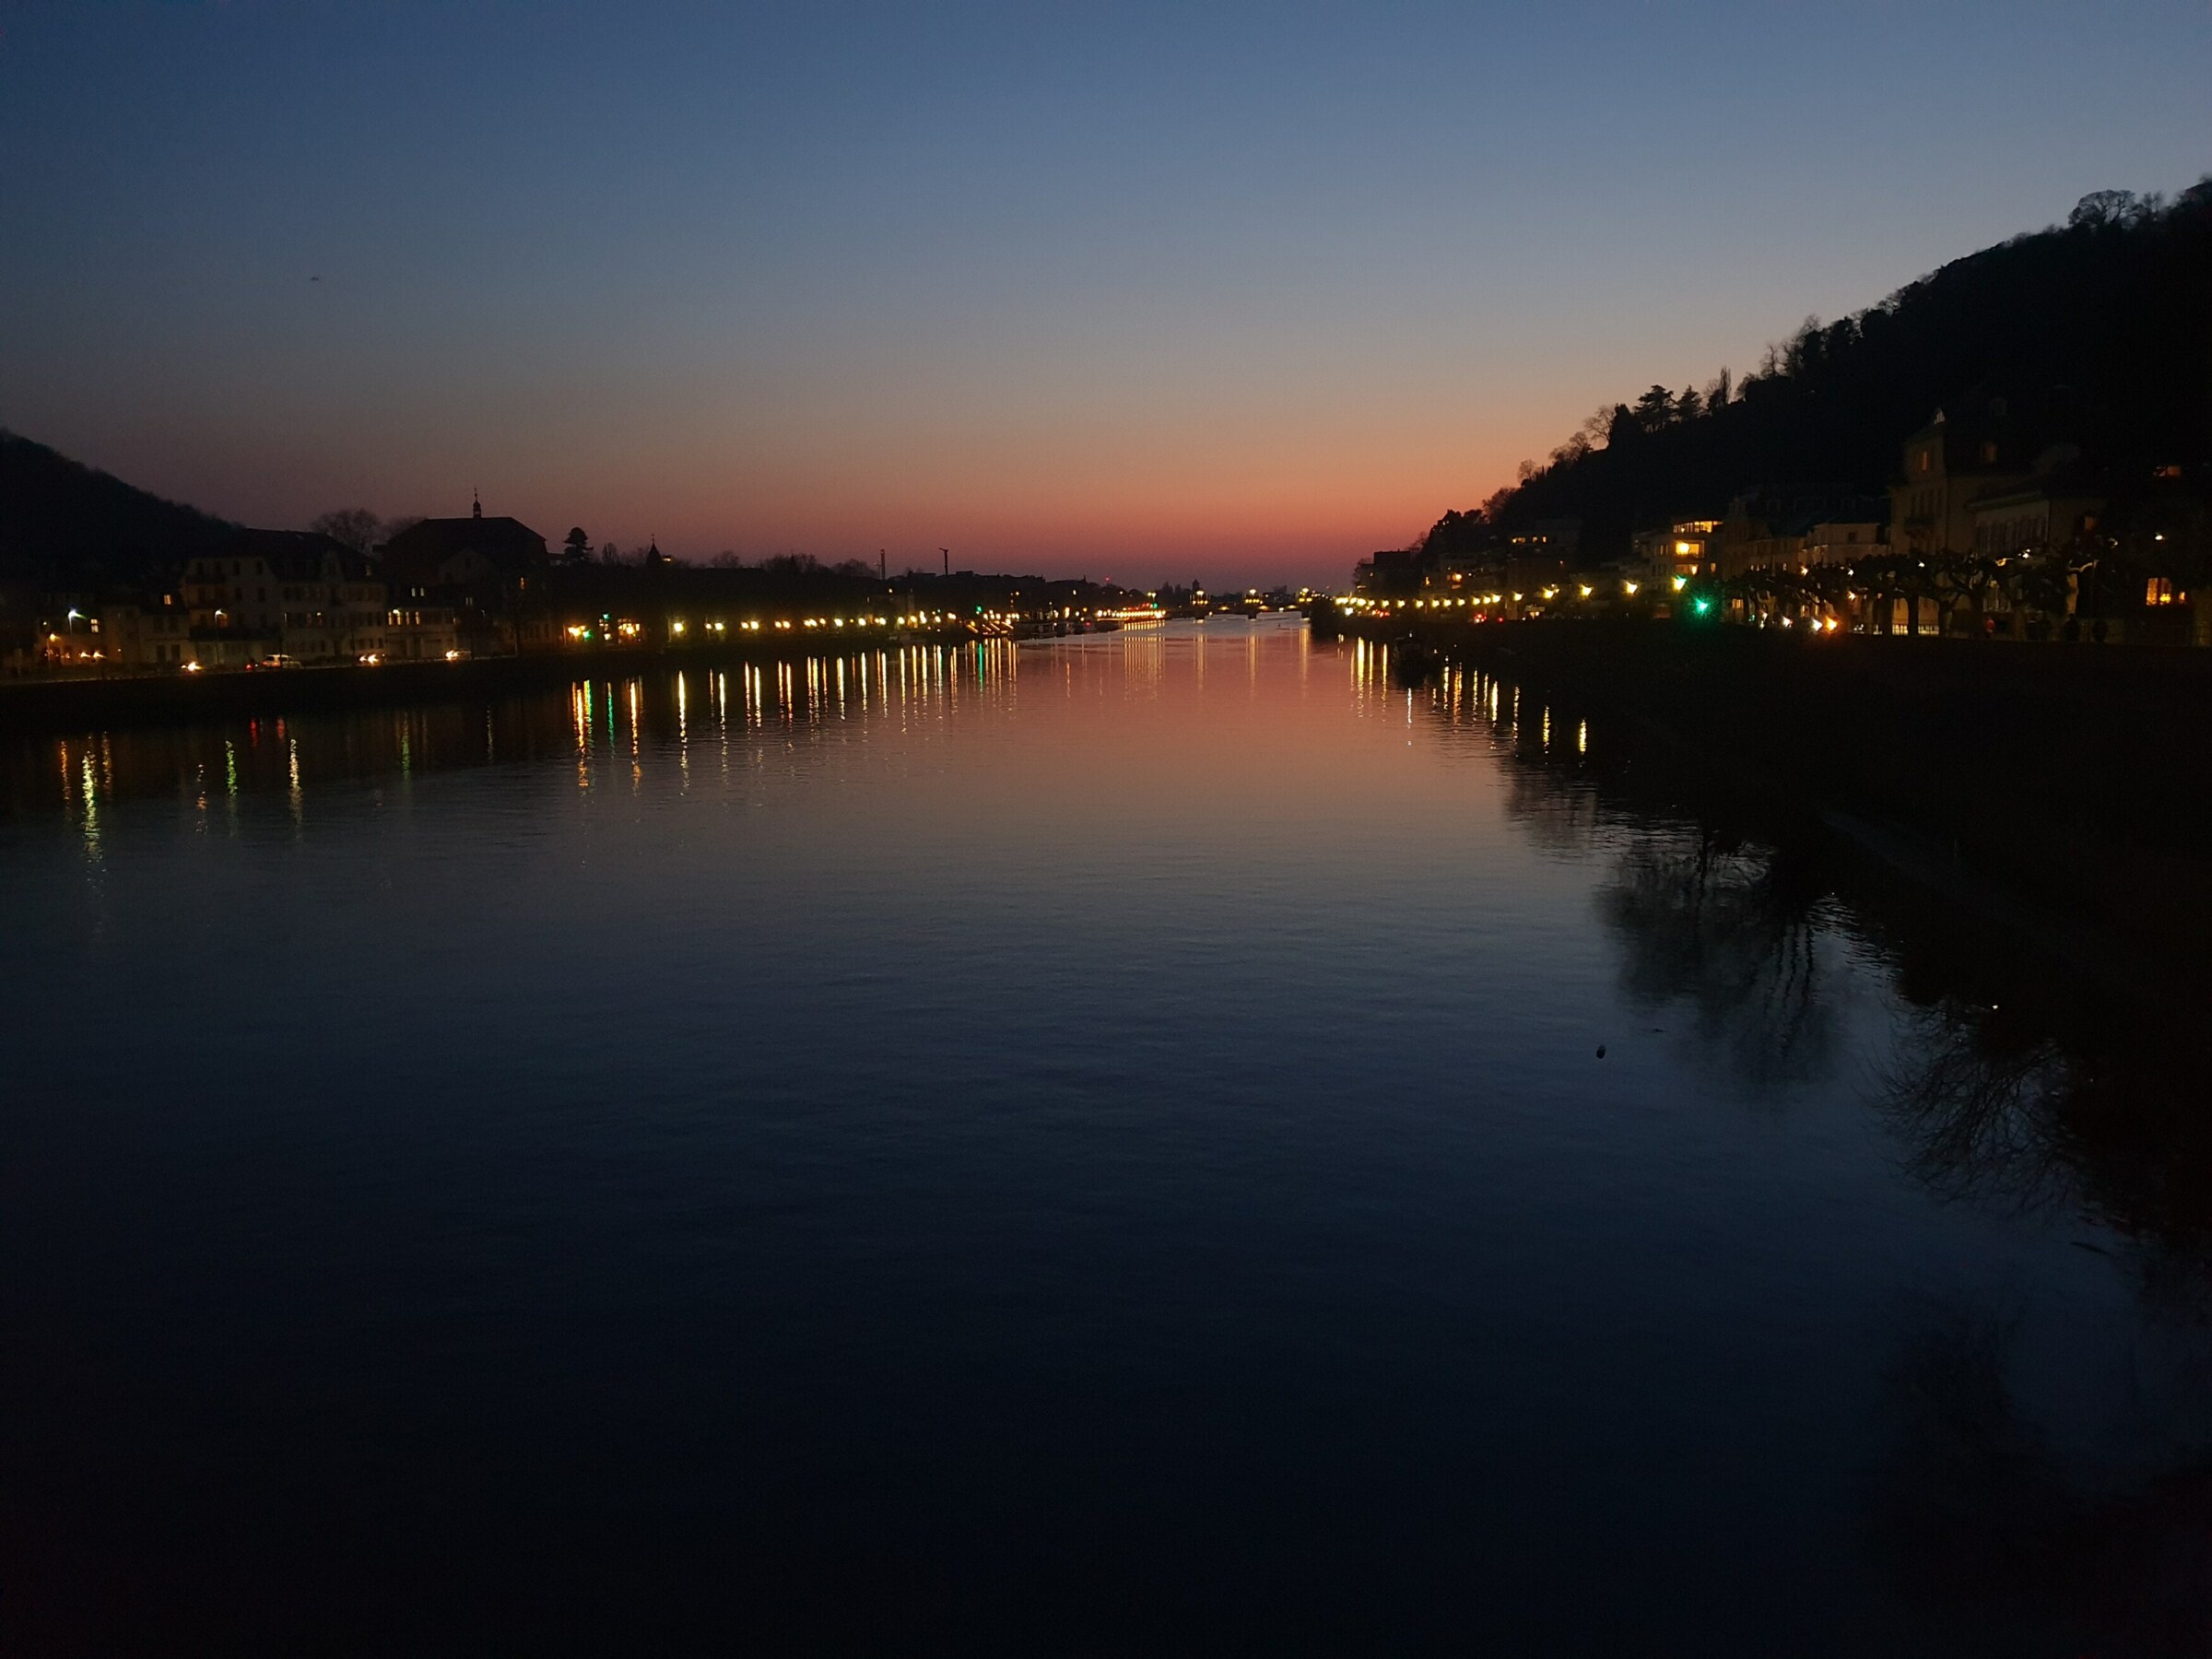 Ein Fluss bei Nacht. Links und rechts am Flußufer leuchten Lichter. Am Horizont strahlt das Abendrot der untergegangenen Sonne. Alles spiegelt sich auf der glatten Wasseroberfläche